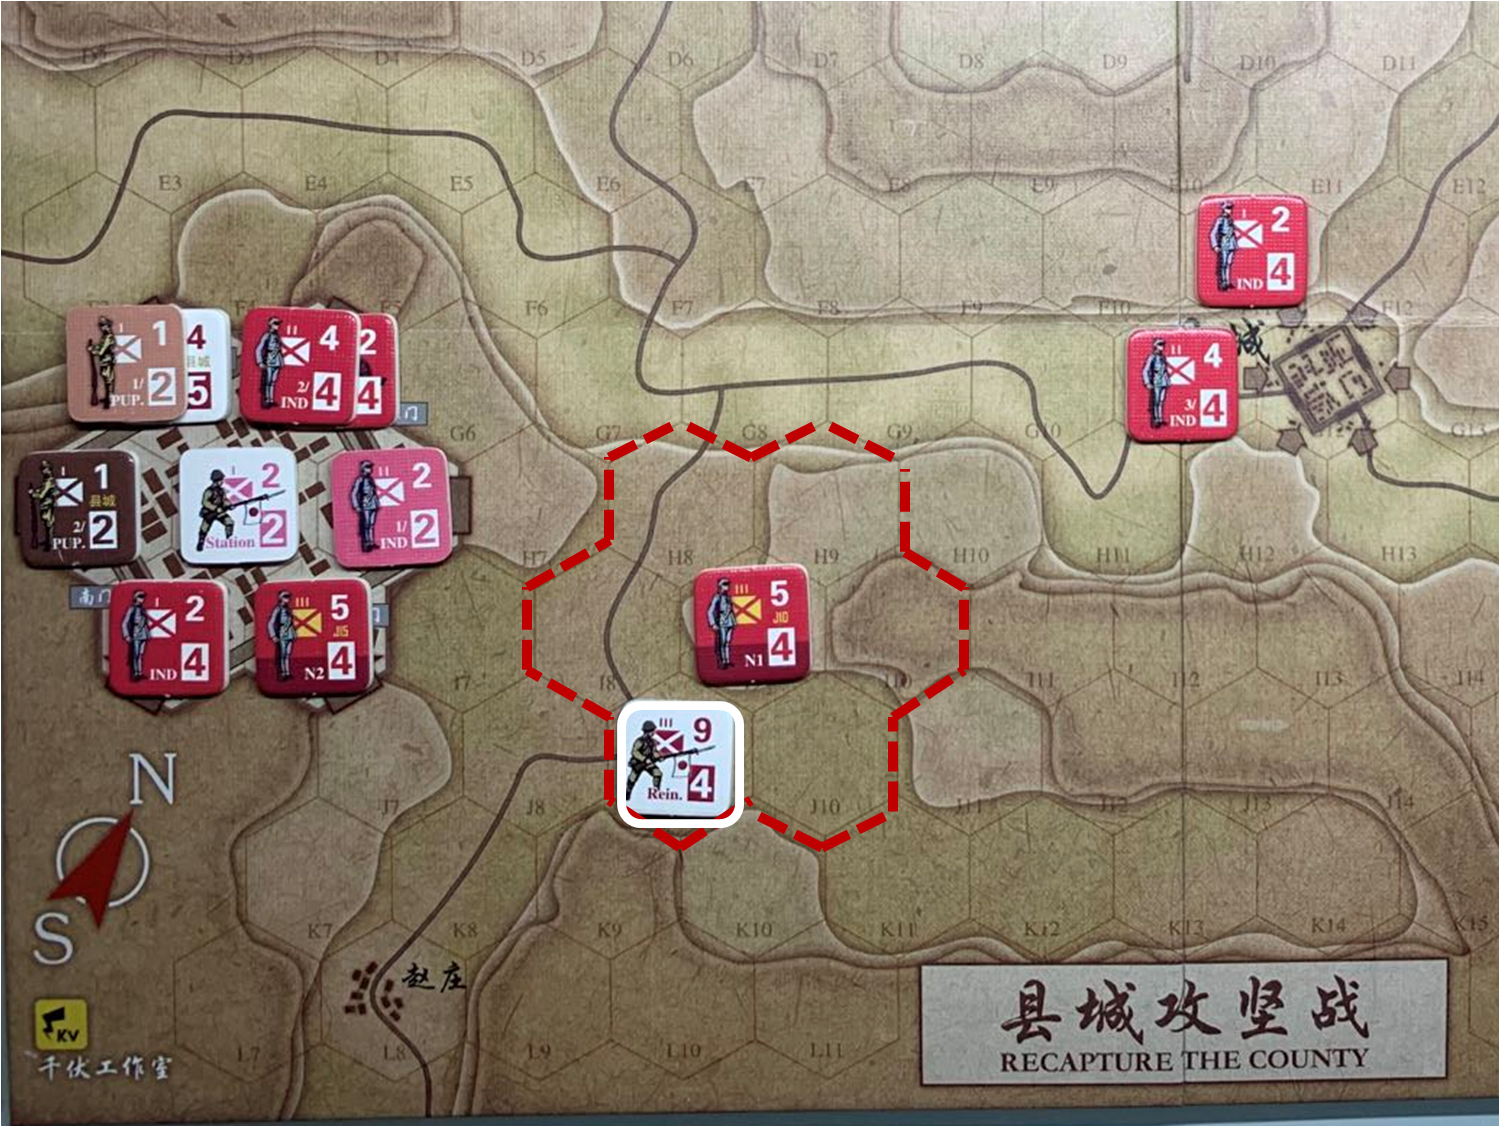 第二回合趙莊方向日軍增援部隊（J9）對於移動命令3的執行計劃與結果